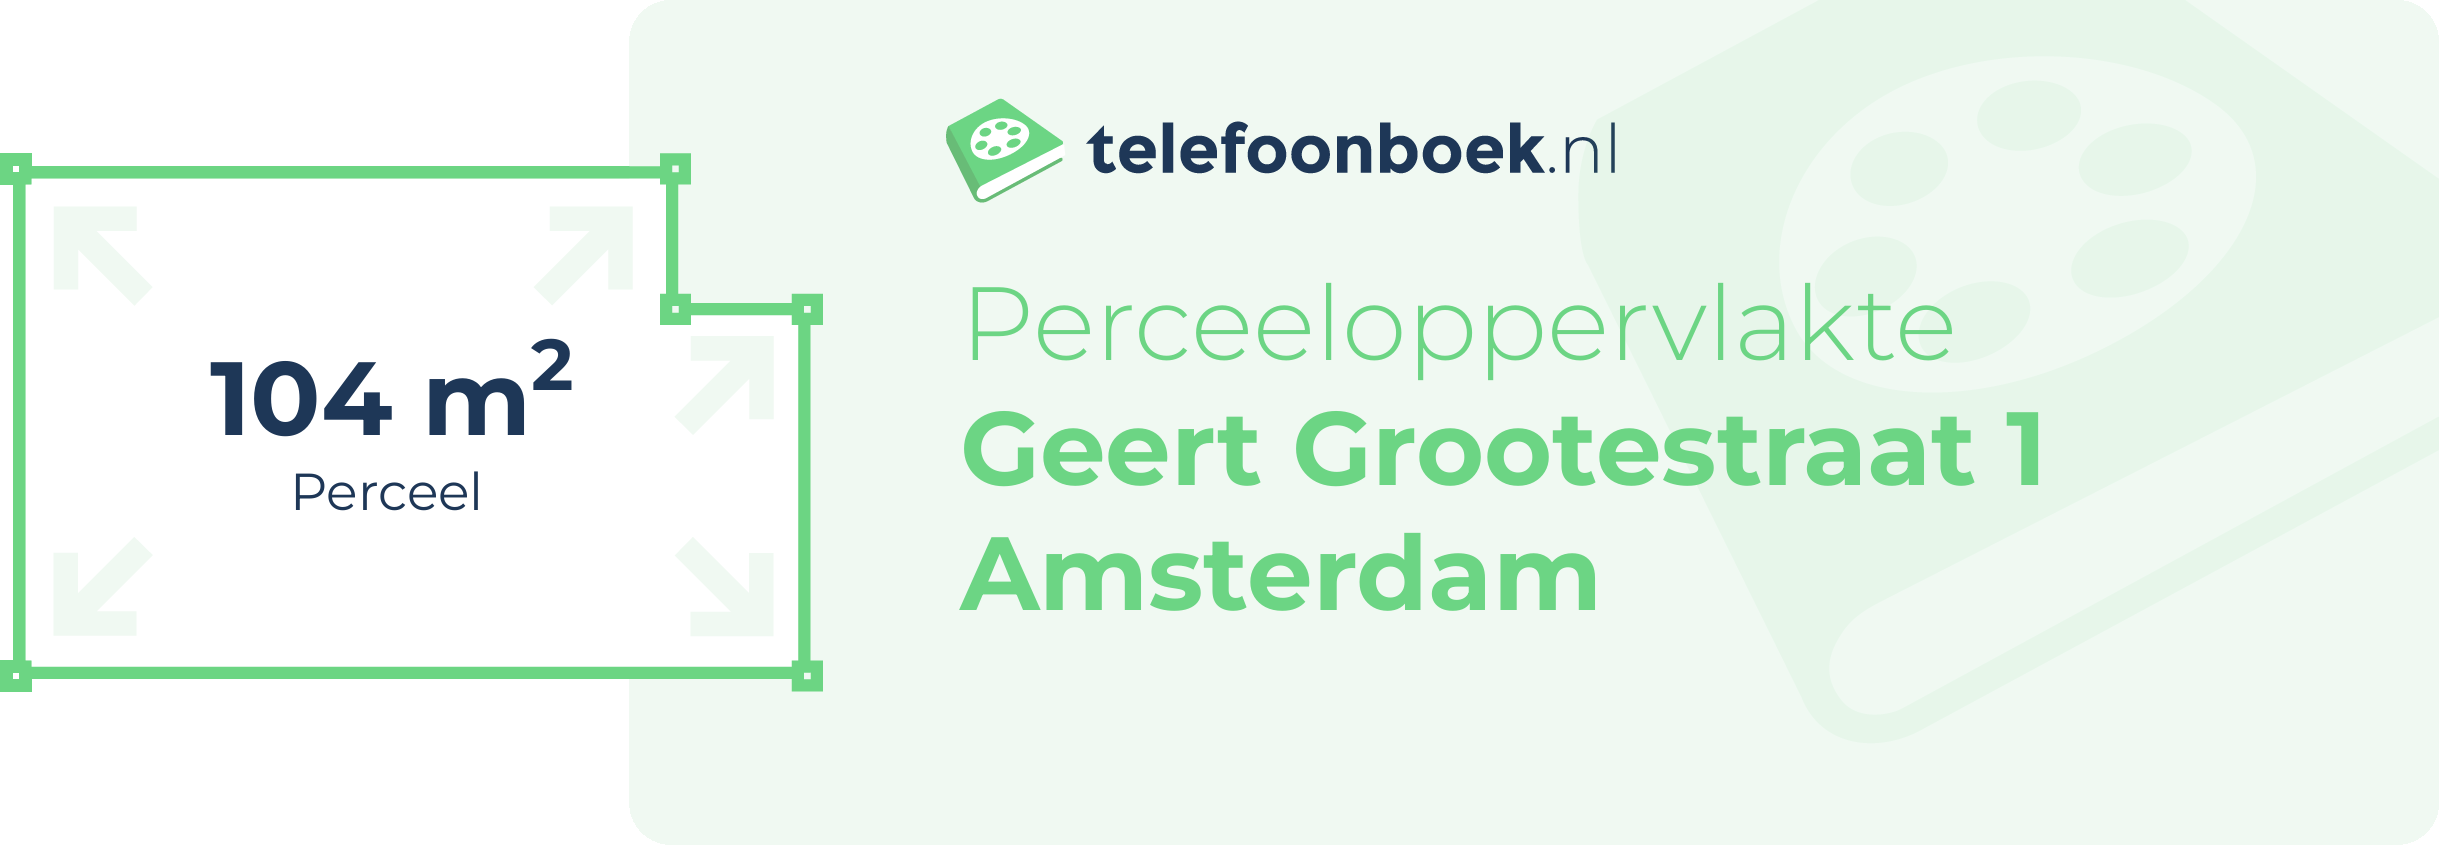 Perceeloppervlakte Geert Grootestraat 1 Amsterdam